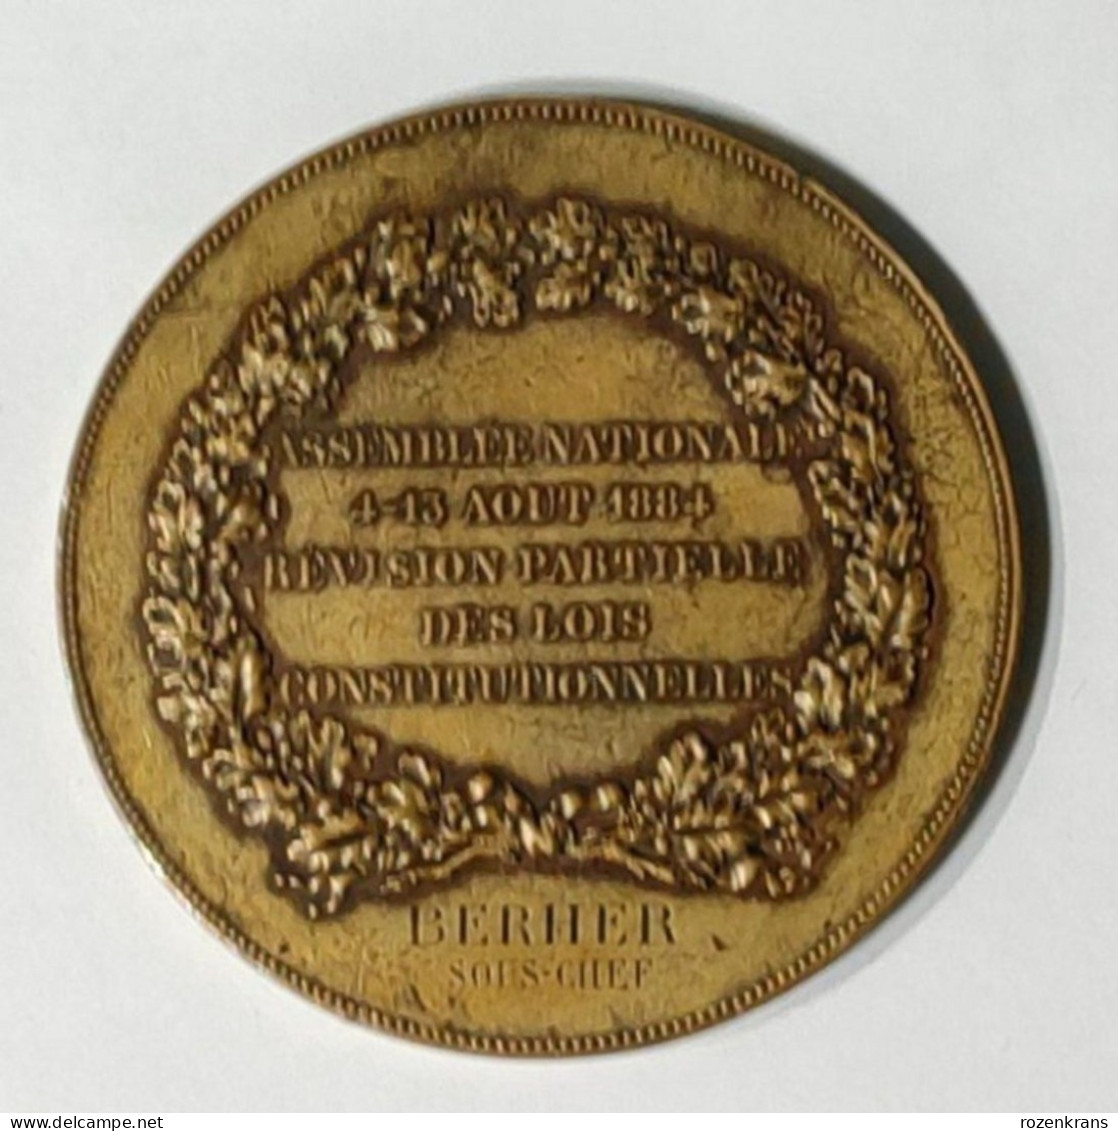 Medaille Ancienne Assemblee Nationale Gravee Chaplain 1884 Revision Des Lois Behrer Sous-Chef Munt Old Medal Oude - Monarchia / Nobiltà